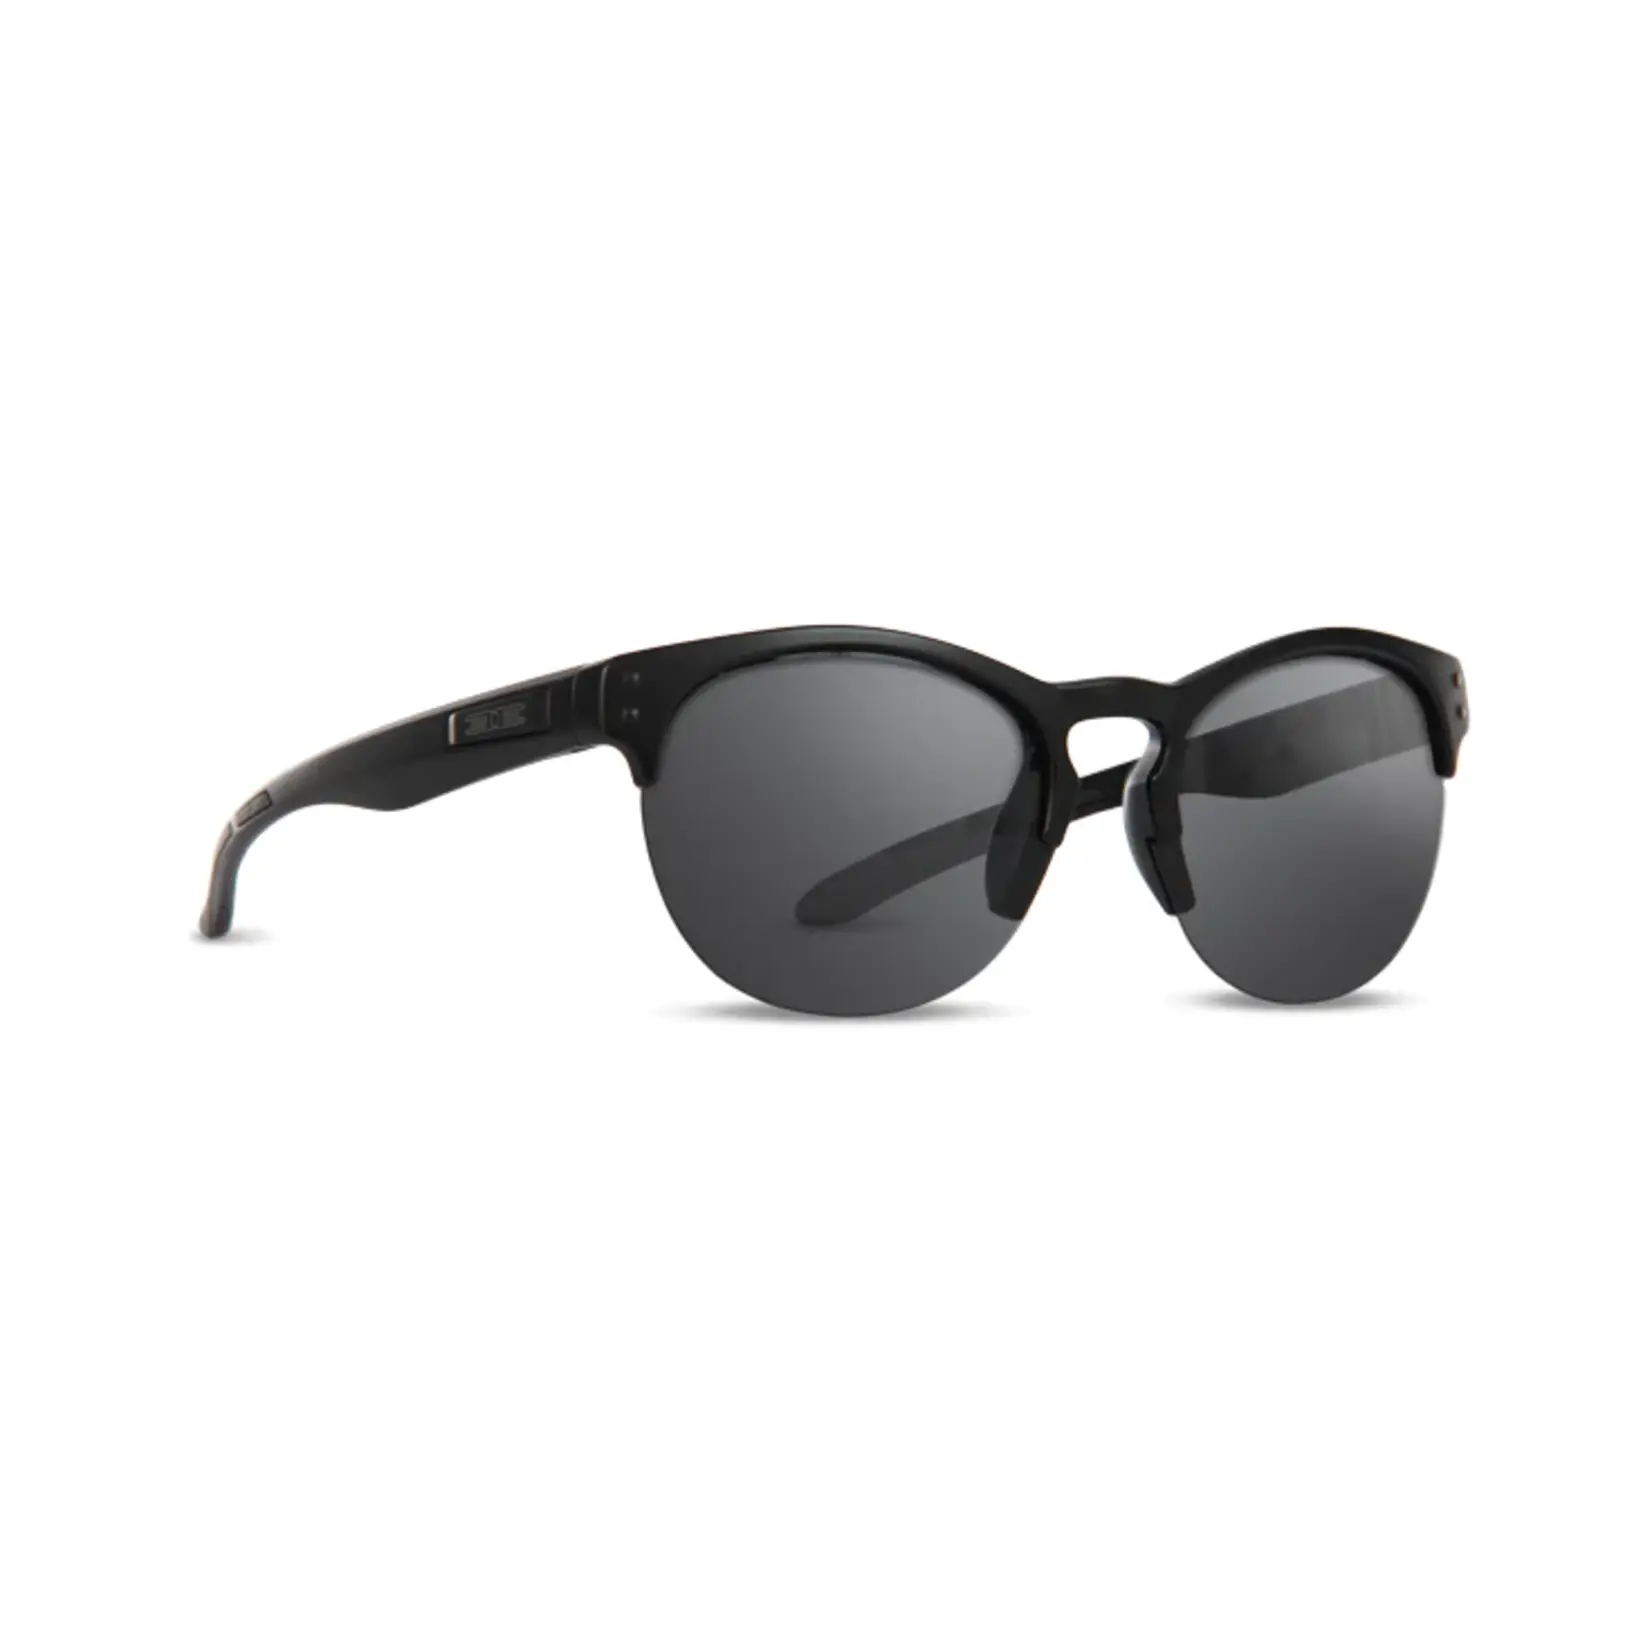 Epoch NEW Epoch Sierra Sunglasses